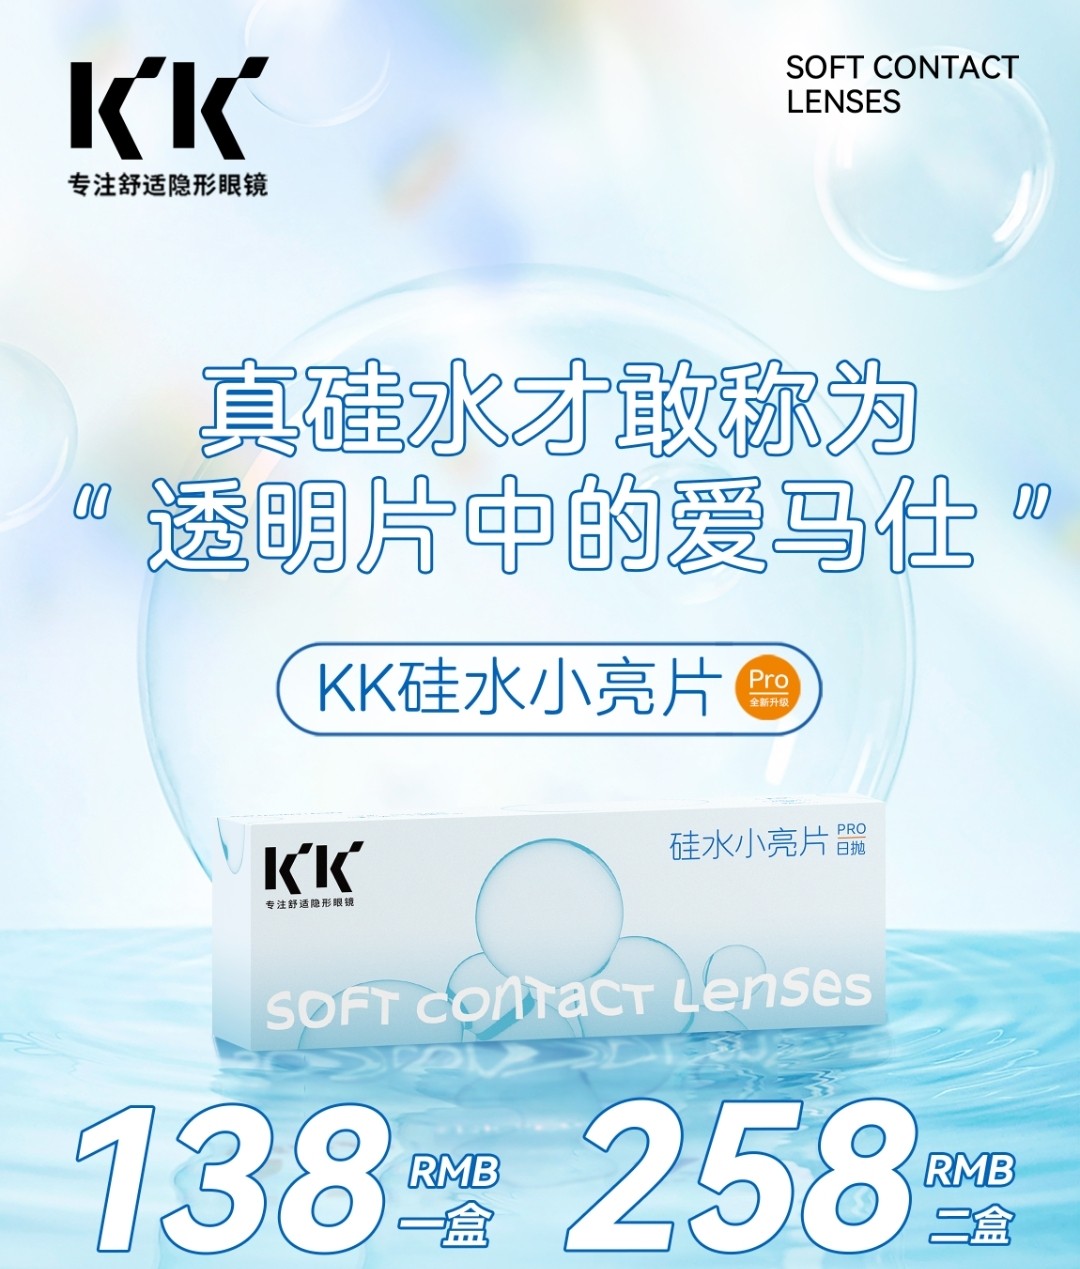 【日抛】KK透明片 全新升级 硅水小亮片PRO